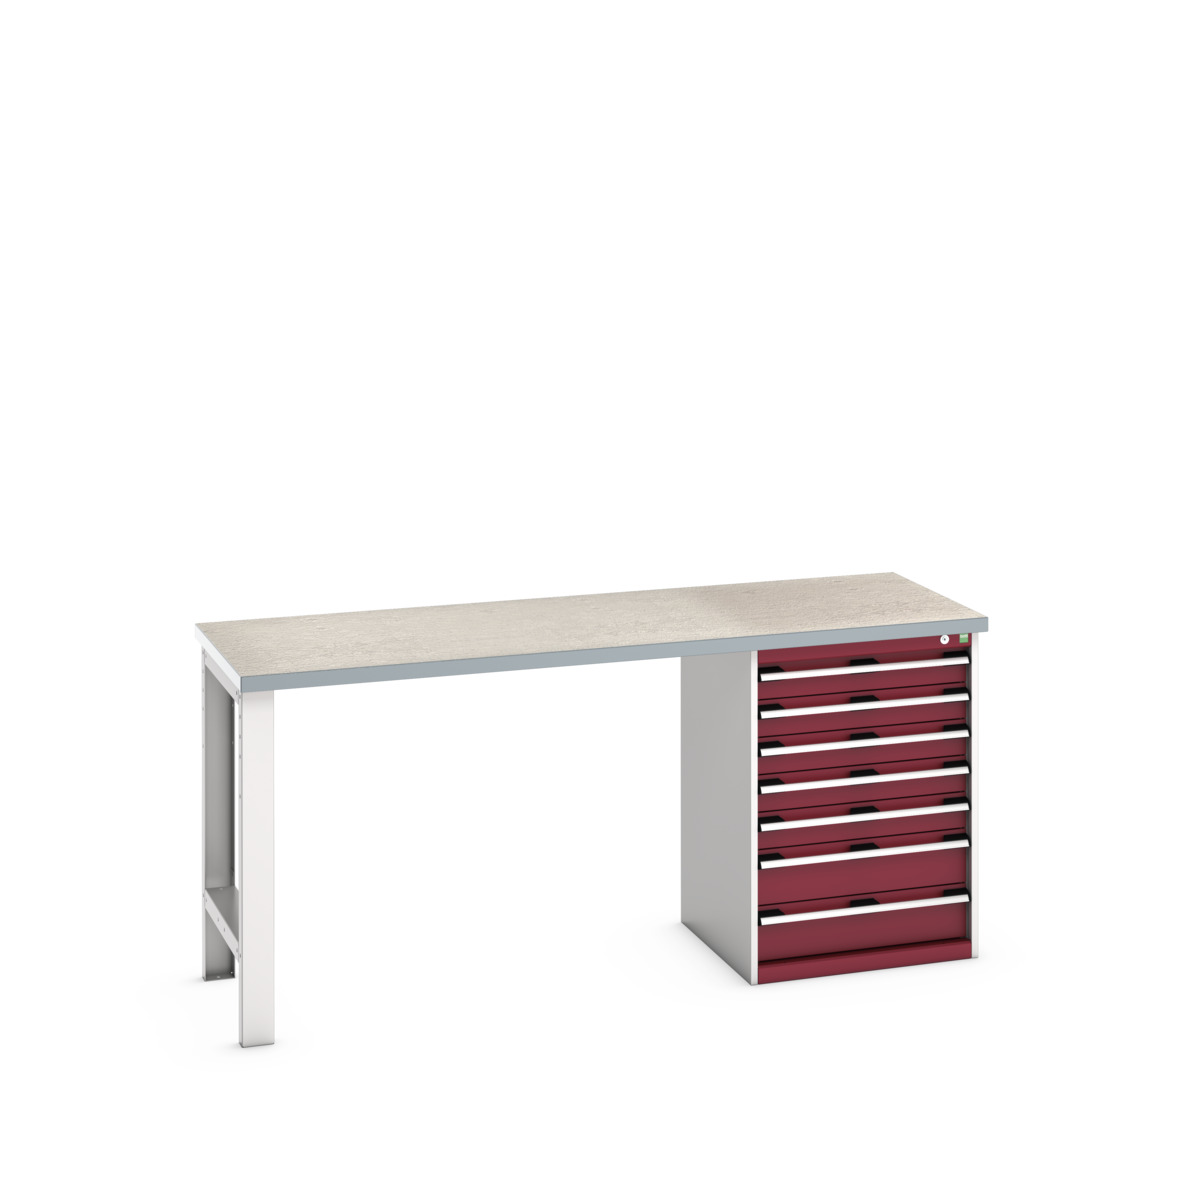 41004122.24V - cubio pedestal bench (lino)